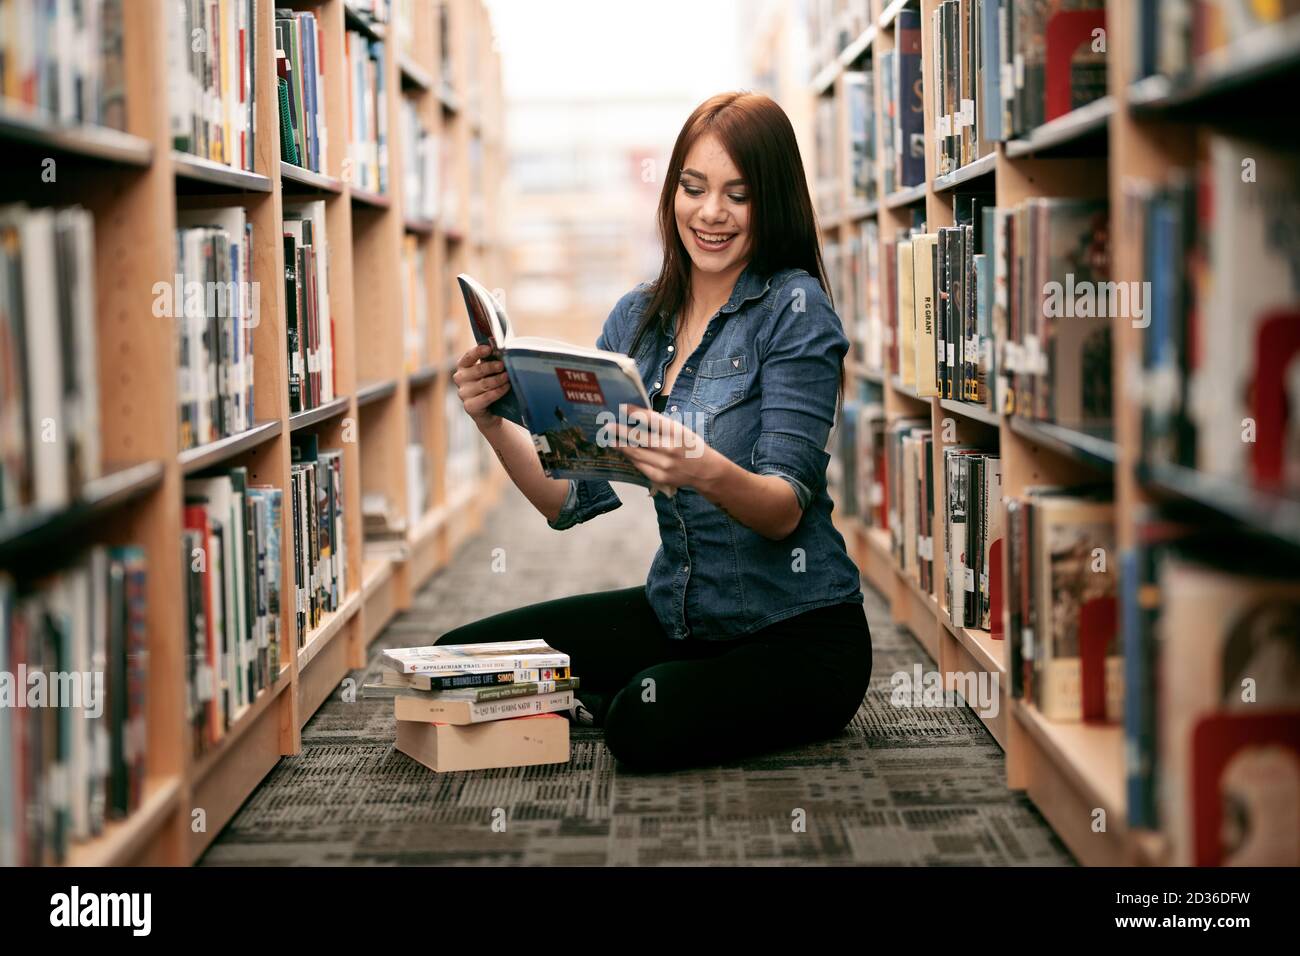 Eine einsame junge Frau, die in ihrer örtlichen Bibliothek Bücher liest, mit Blick auf Bücherregale und Bücherregale. Stockfoto